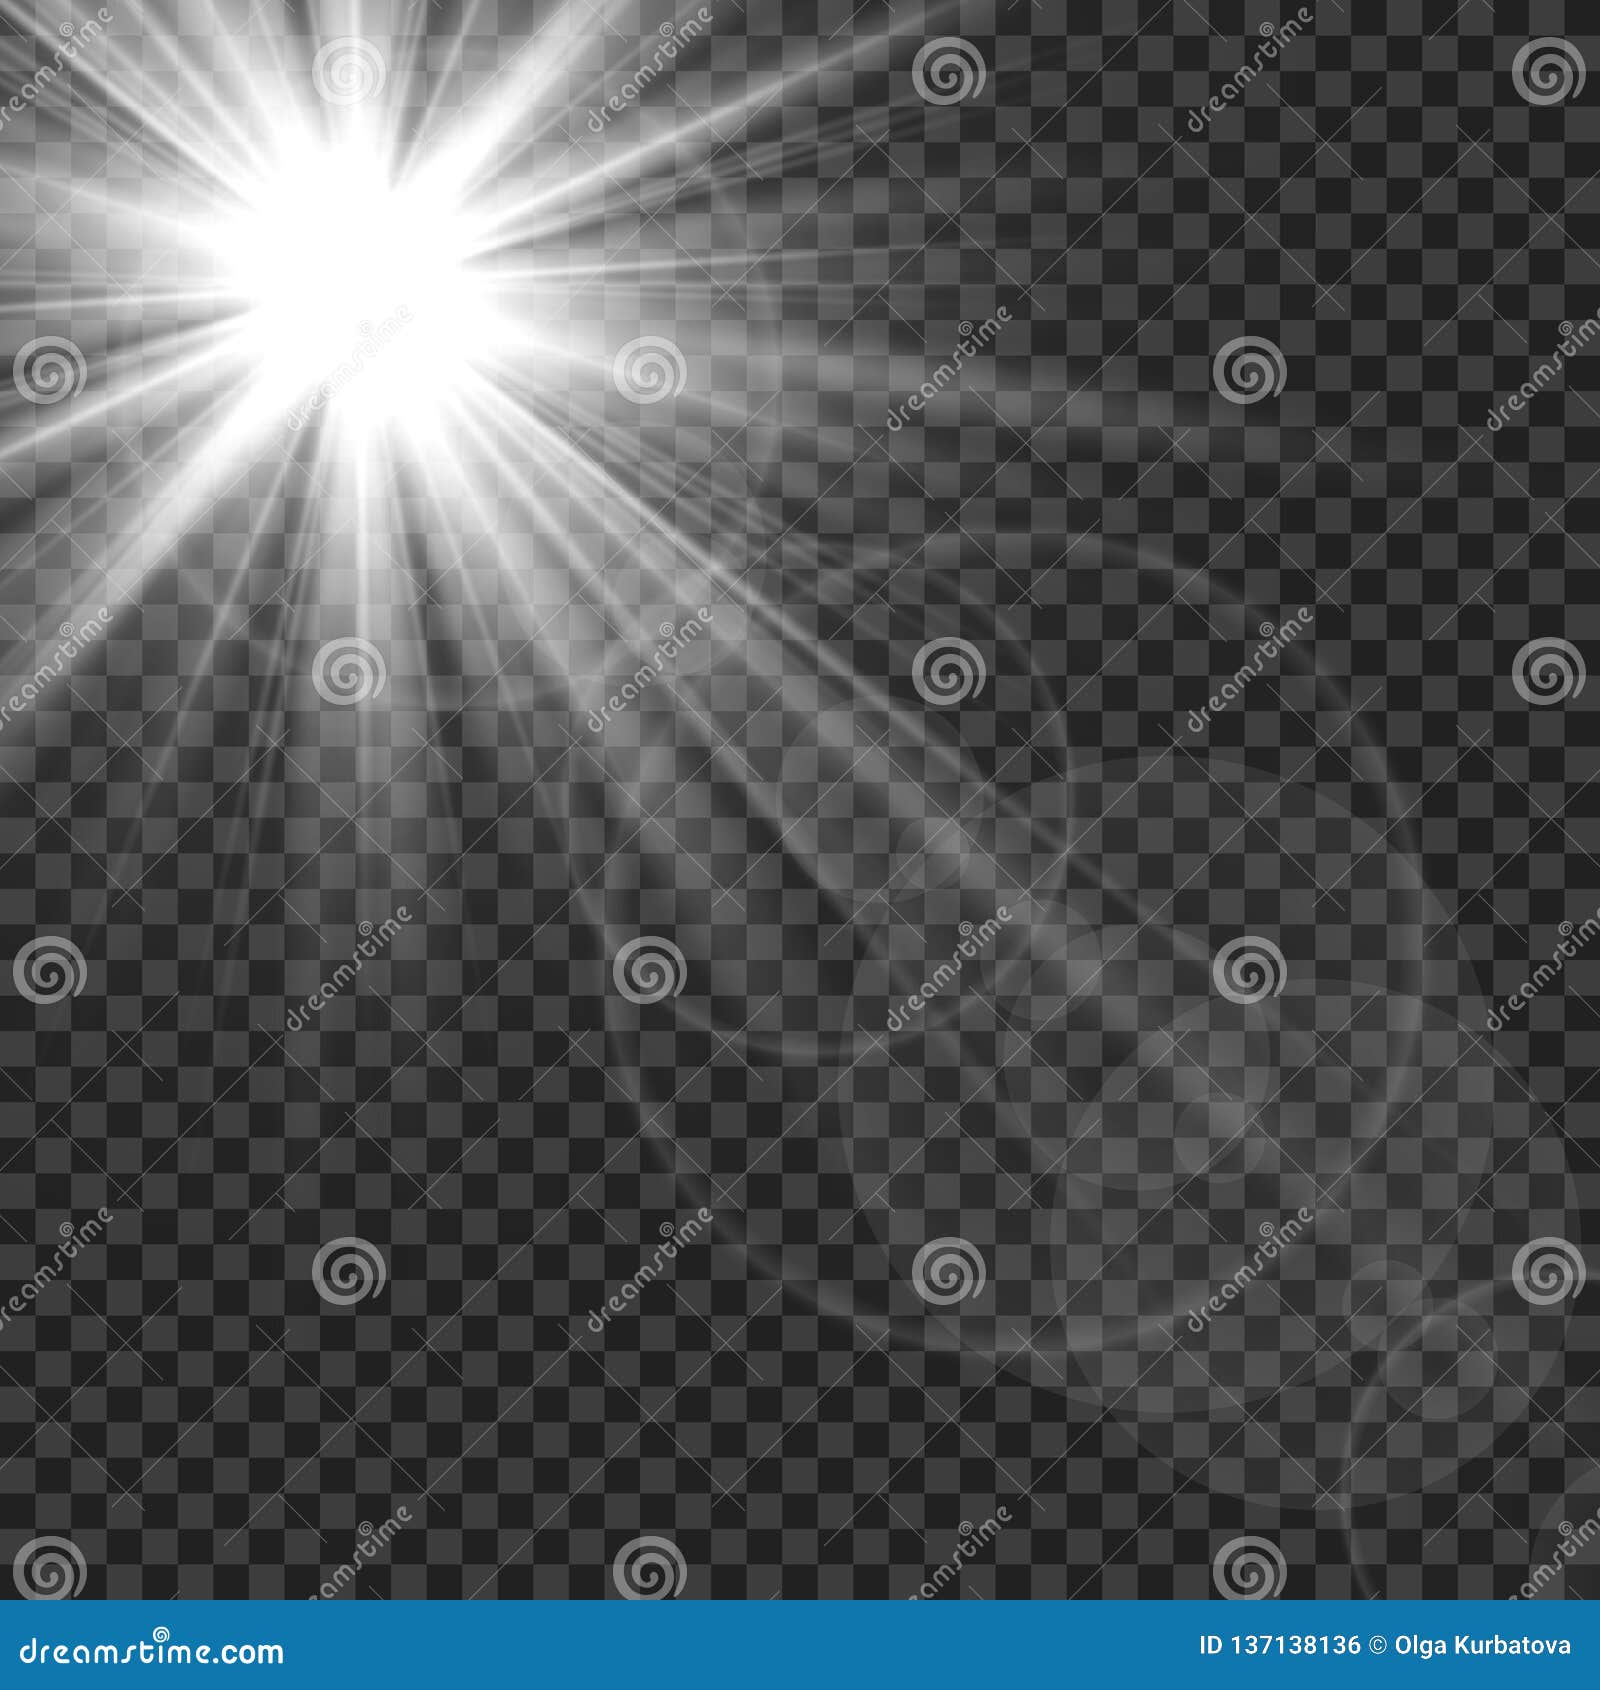 sunlight . sun rays light lens flare glare. white transparent sunshine starburst  